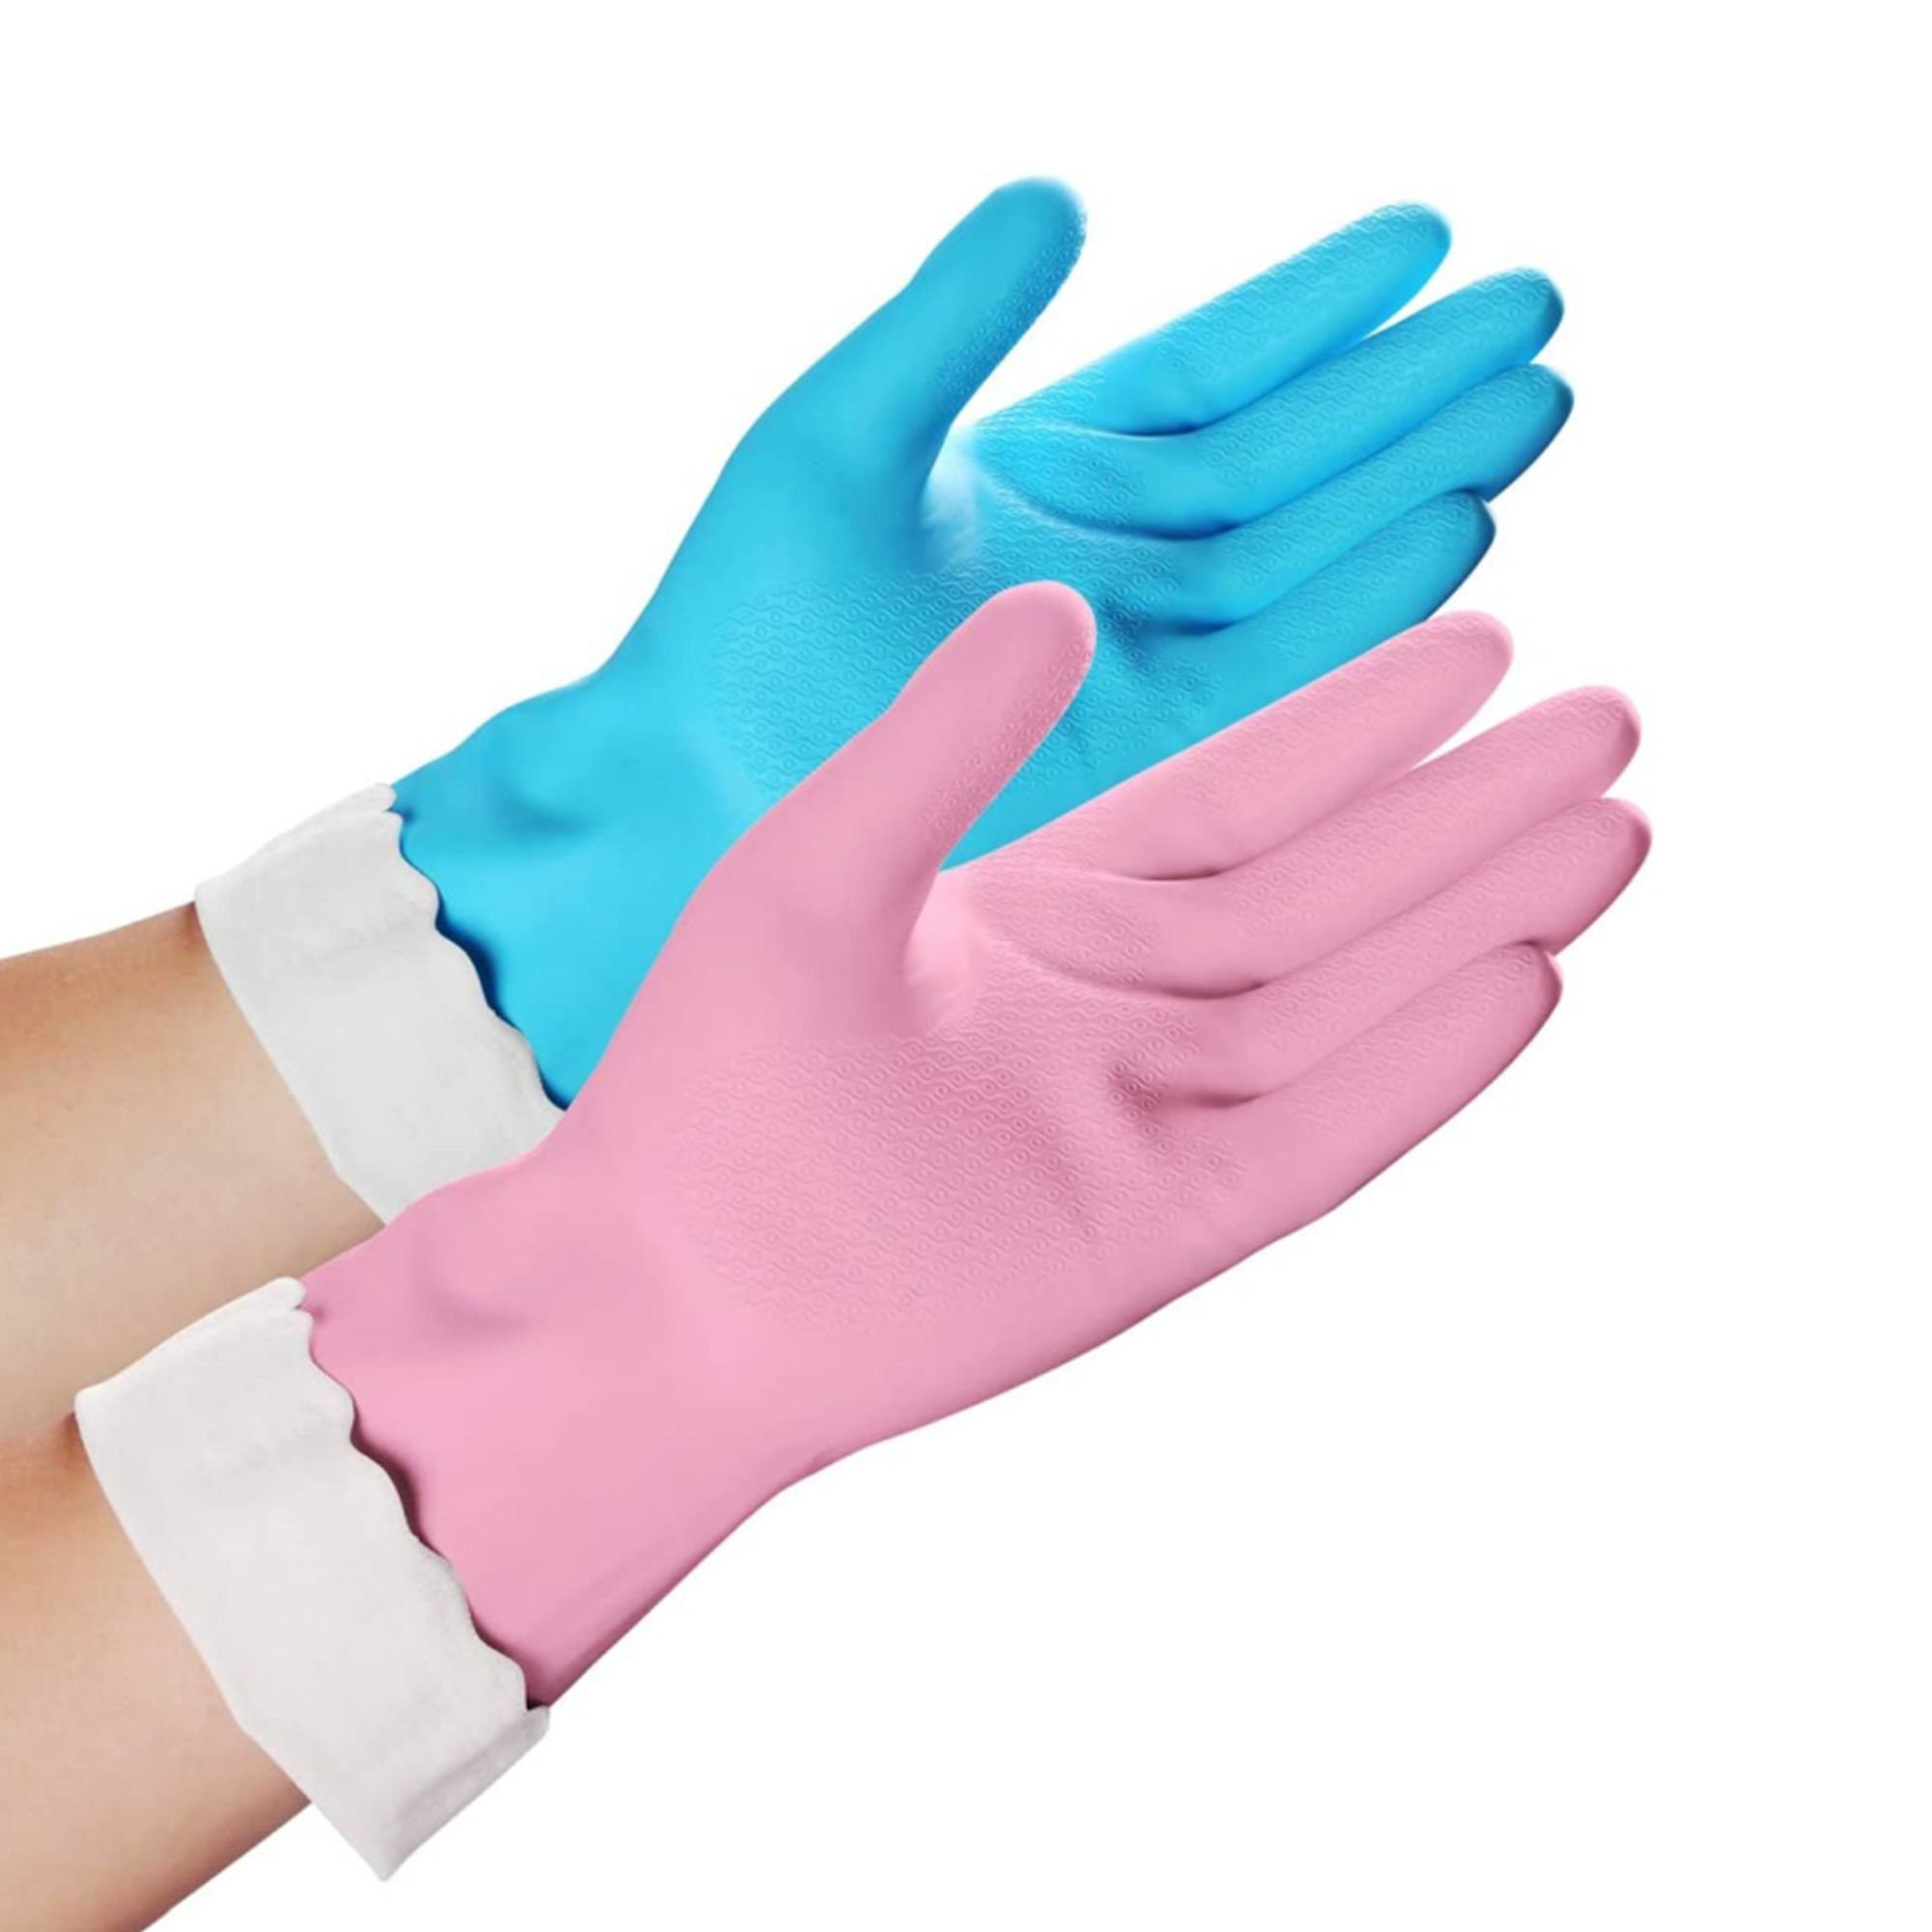 Passion Accessories Gloves & Mittens Gardening & Work Gloves The Original Designer Dish Washing Gloves. 